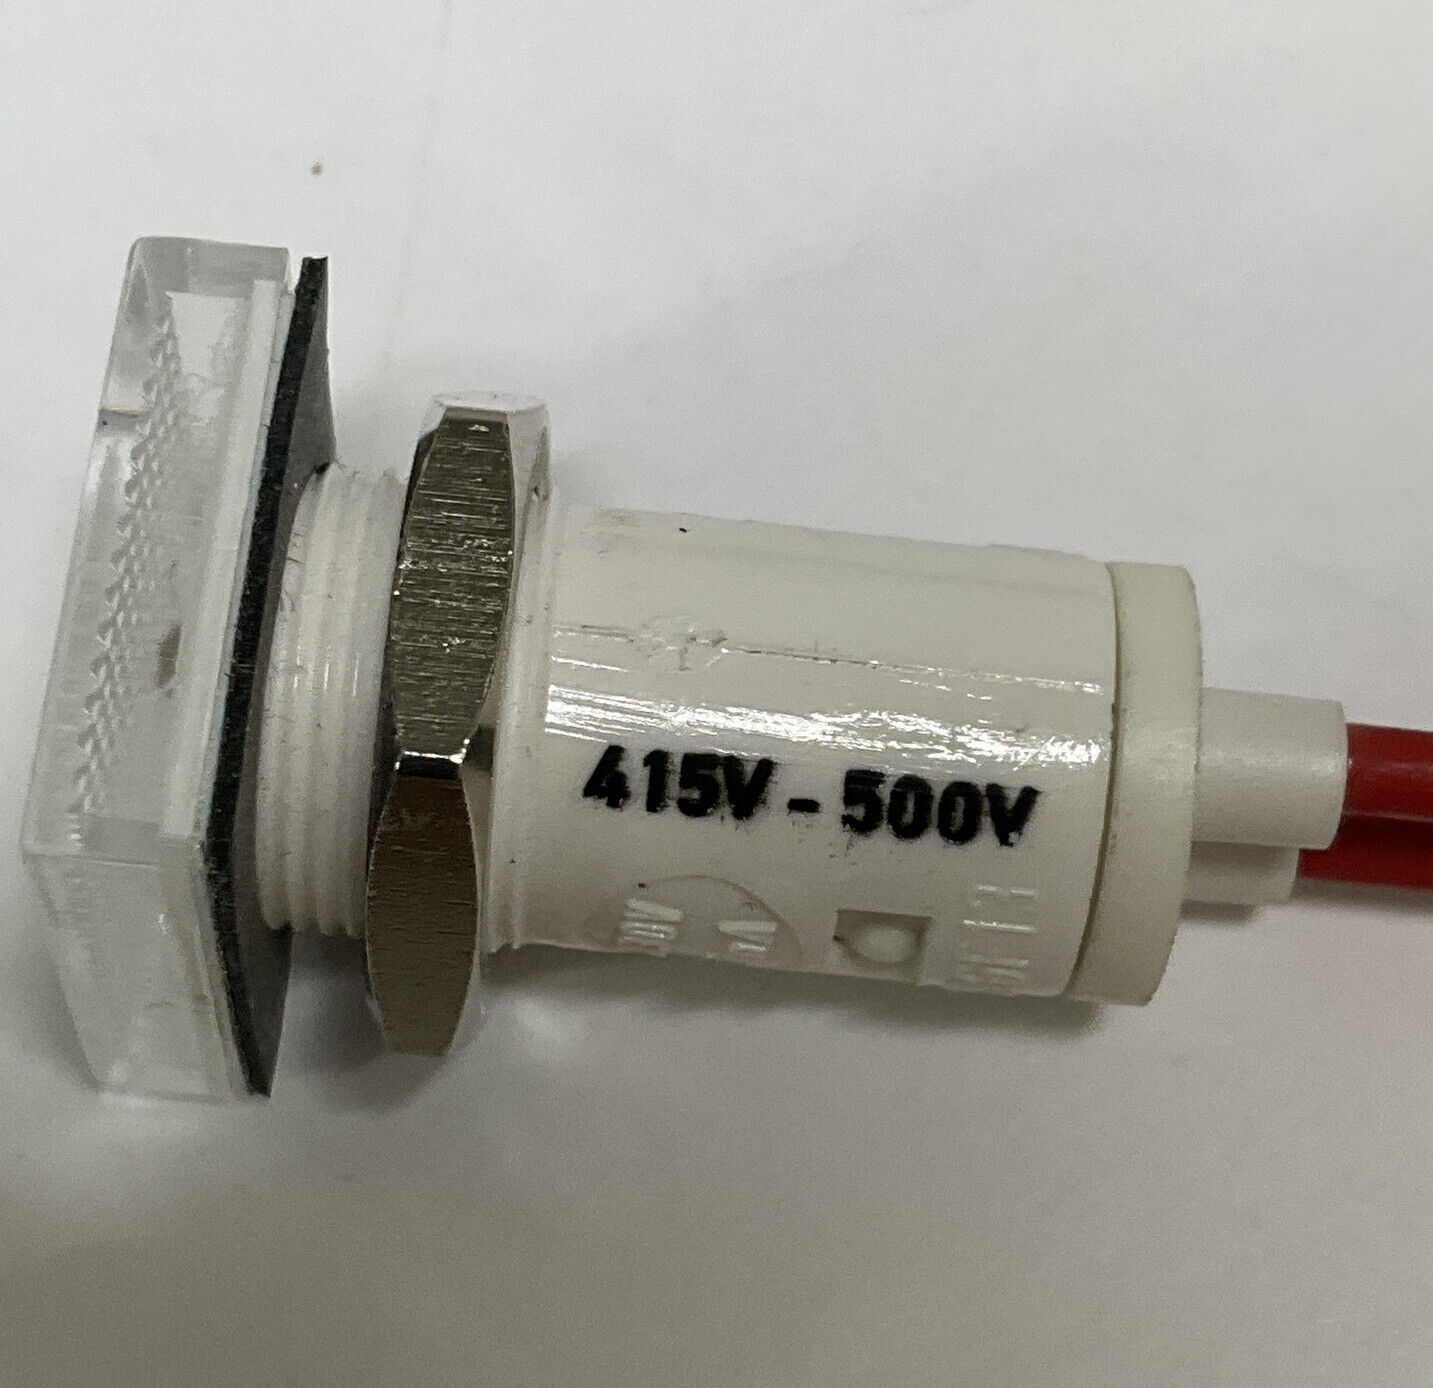 Eaton L-PKZ0 / XTPAXILWC 1-Pcs Universal Indicator Lamp White 415-500V (BL242)